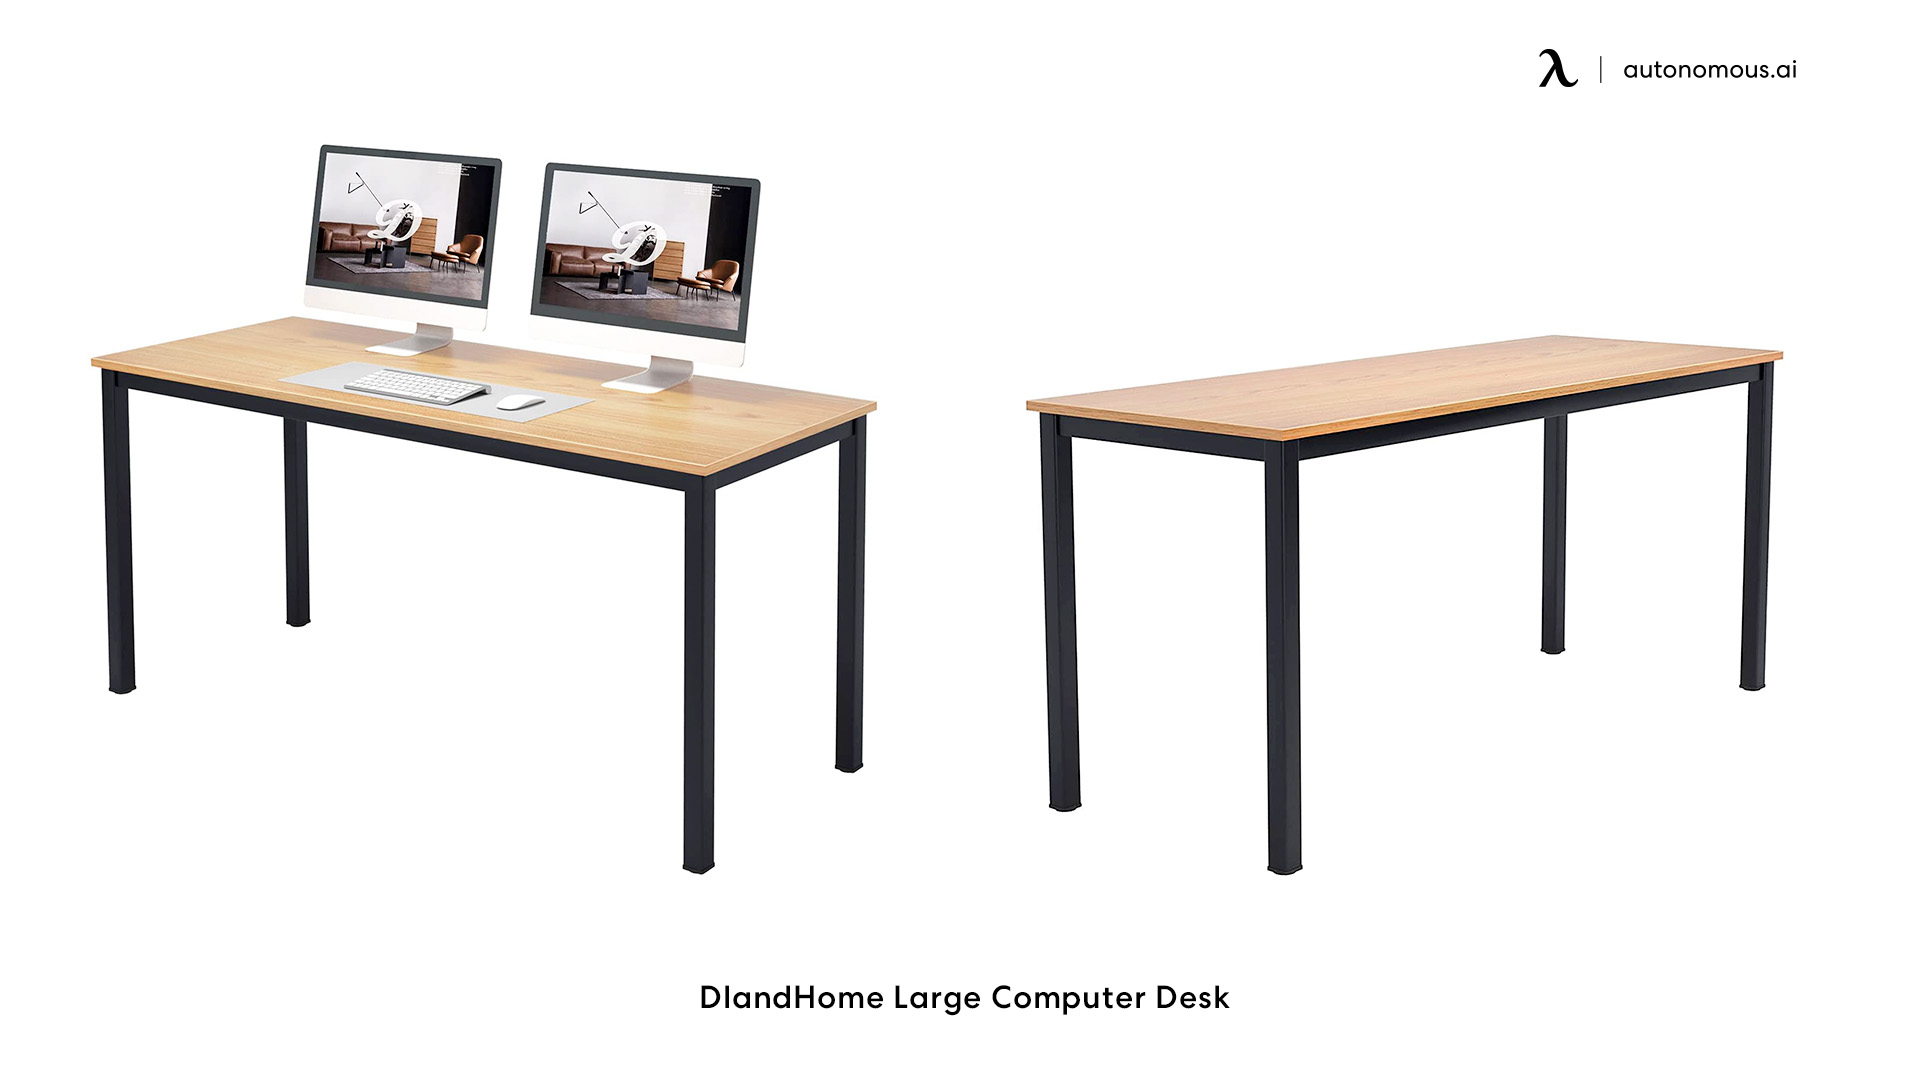 DlandHome Large Computer Desk